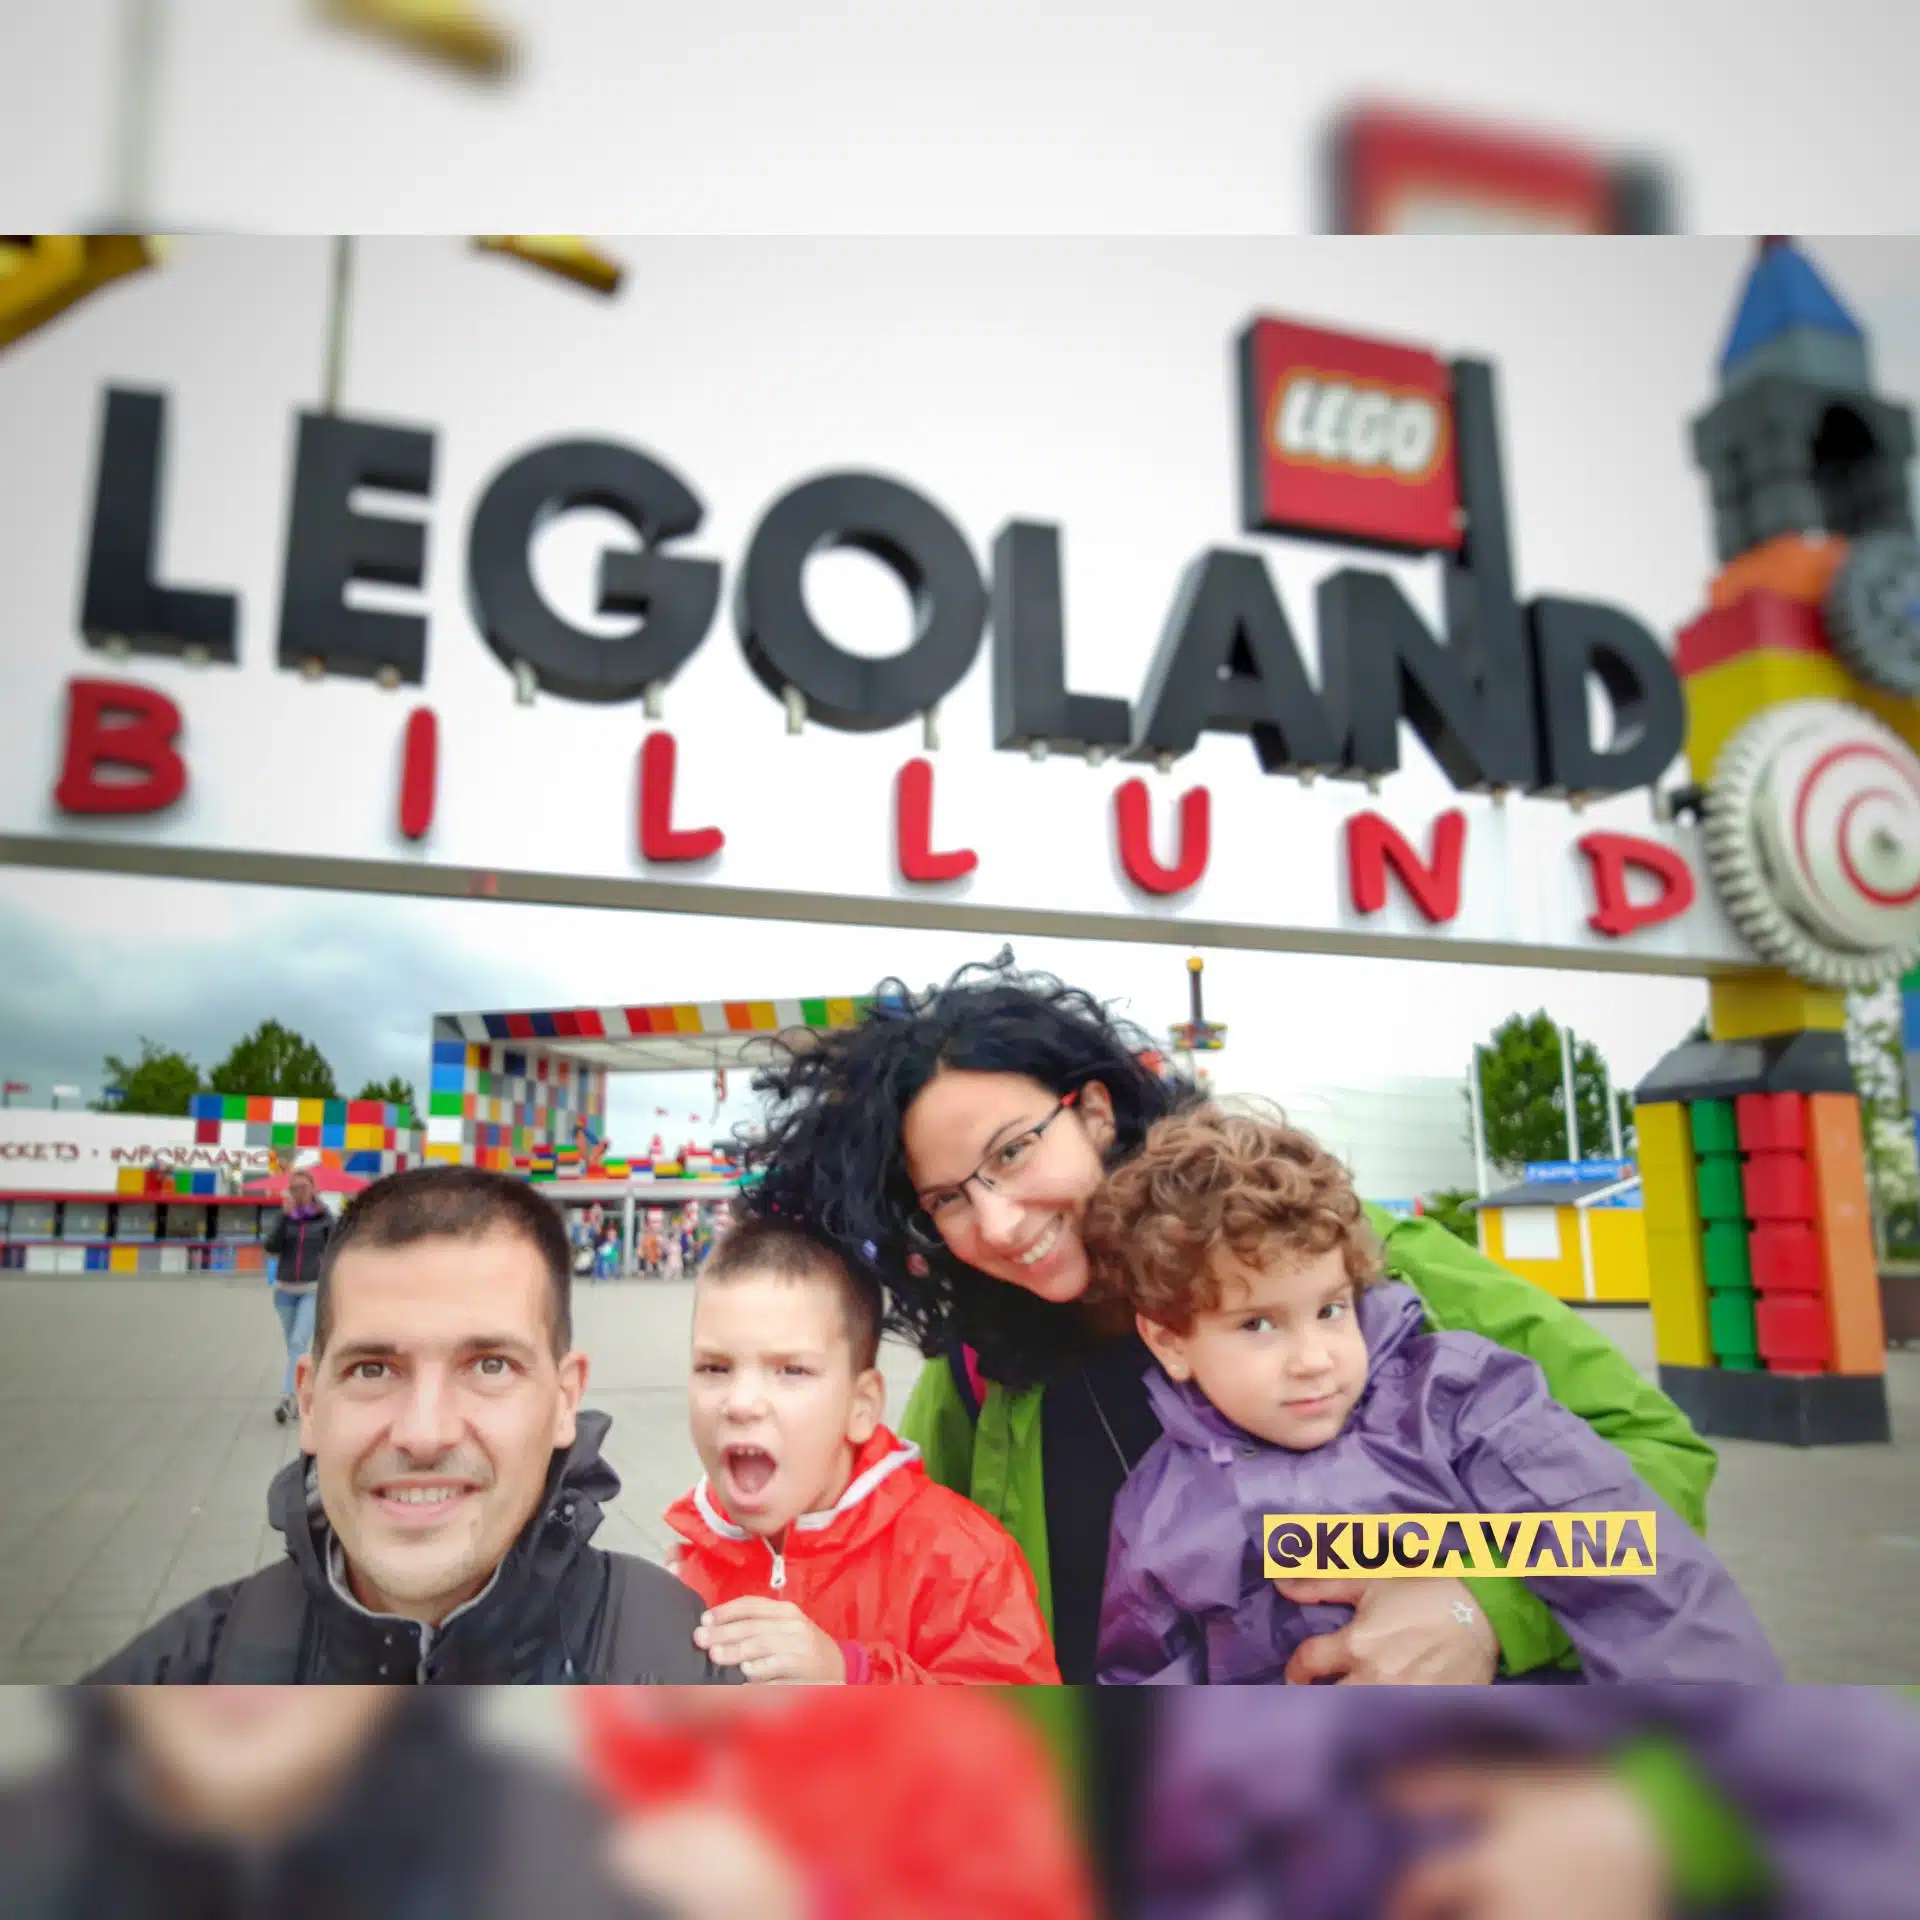 En aquest moment estàs veient Legoland (Billund): 5 coses a saber abans d'anar